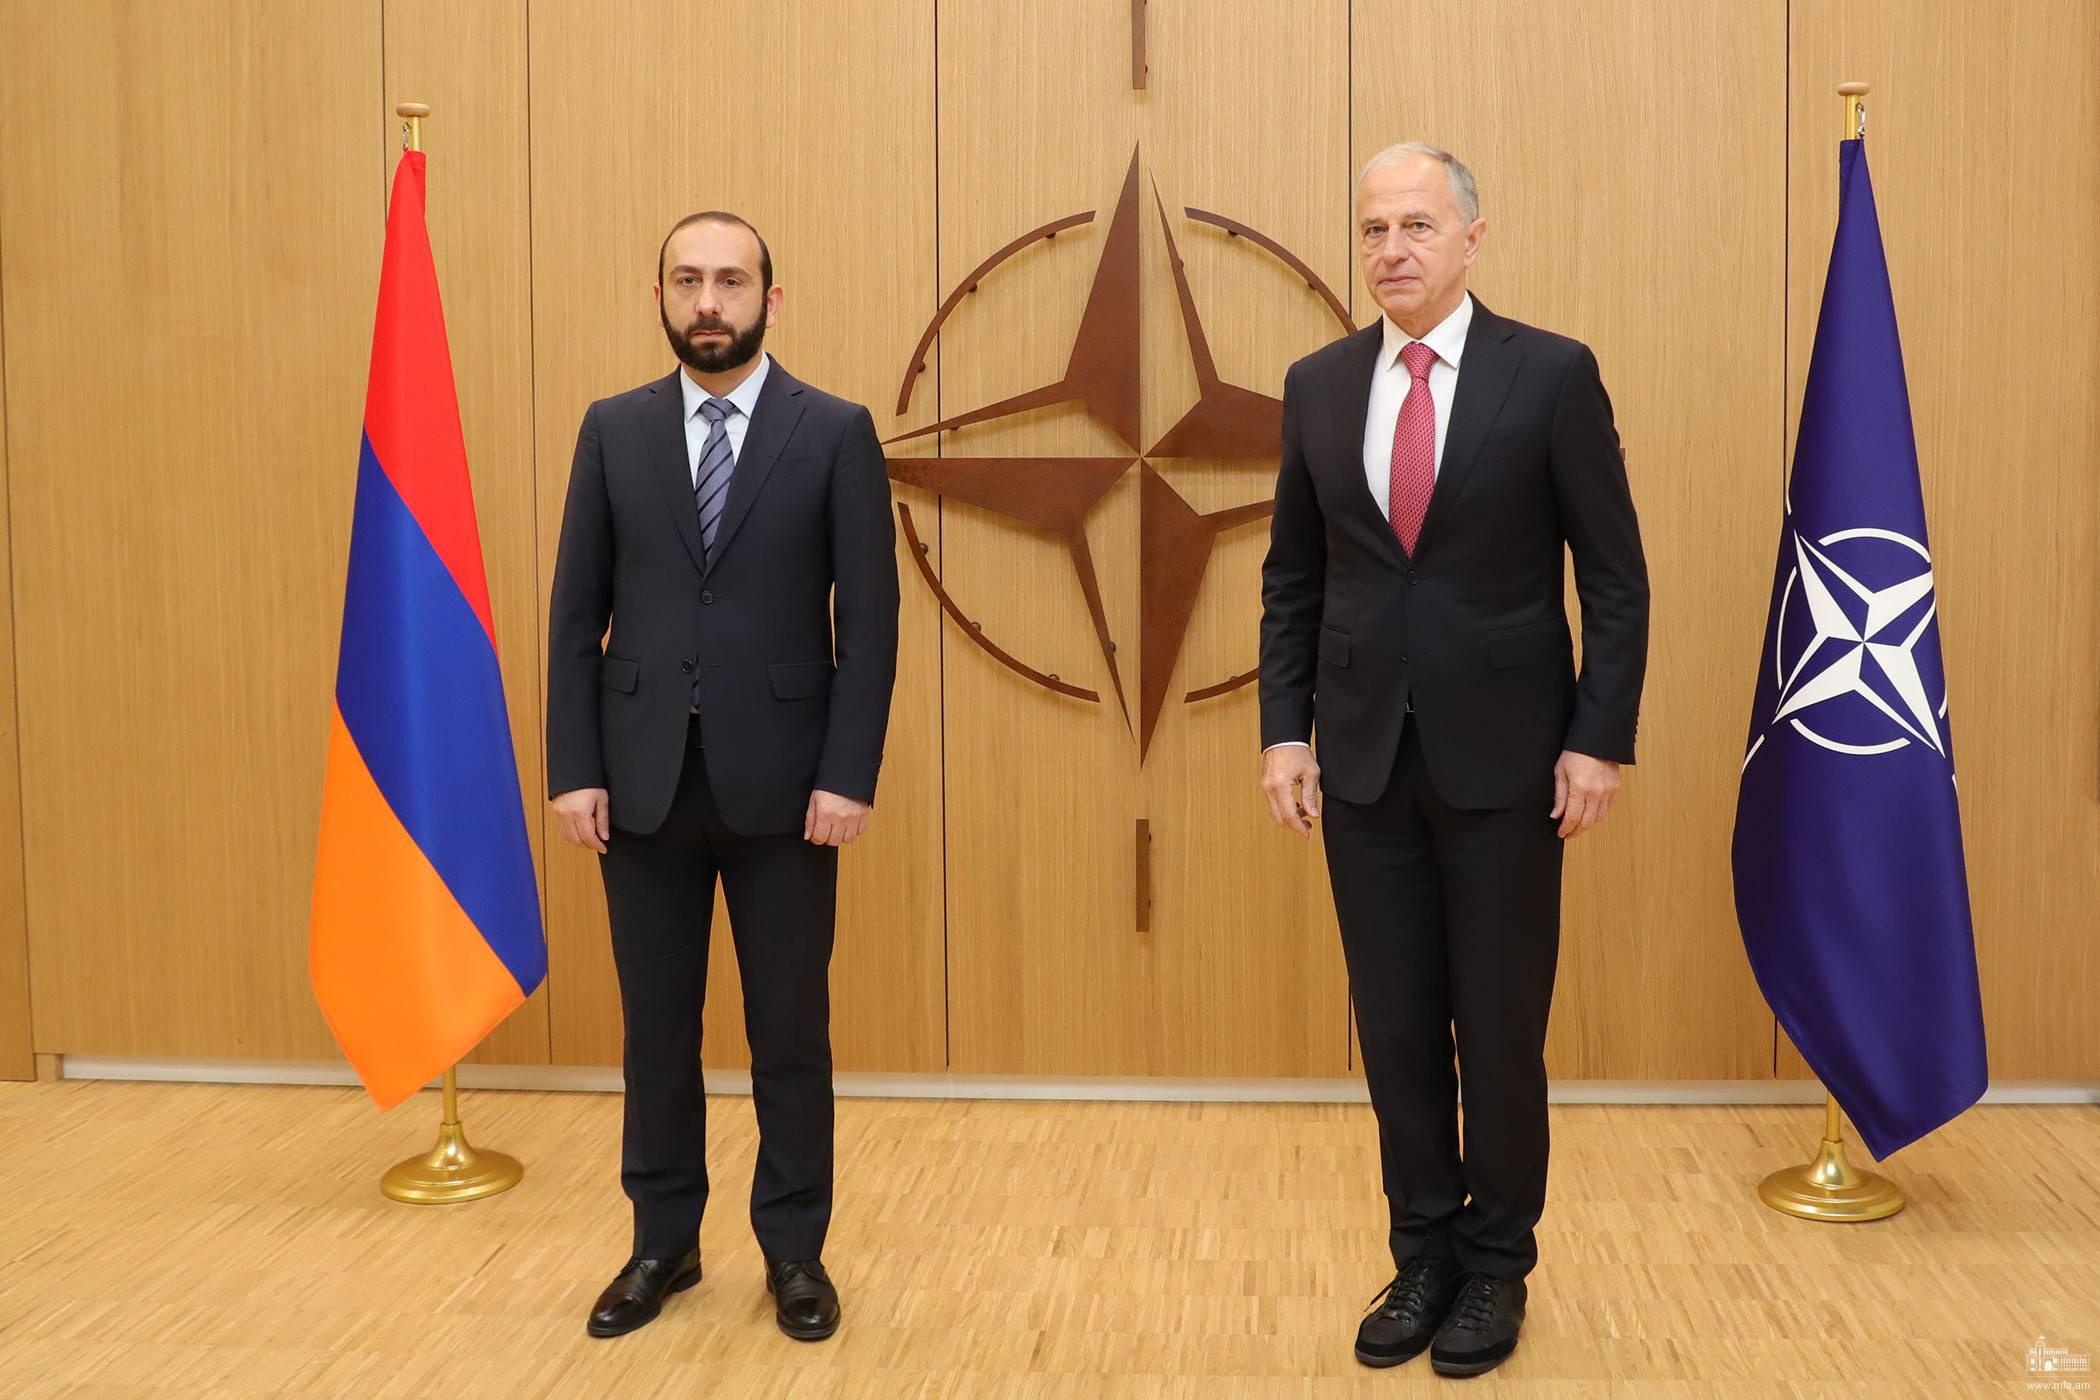 Mirzoyan, NATO merkezinde Dağlık Karabağ’daki mevcut durumuyla ilgili bilgi aktardı